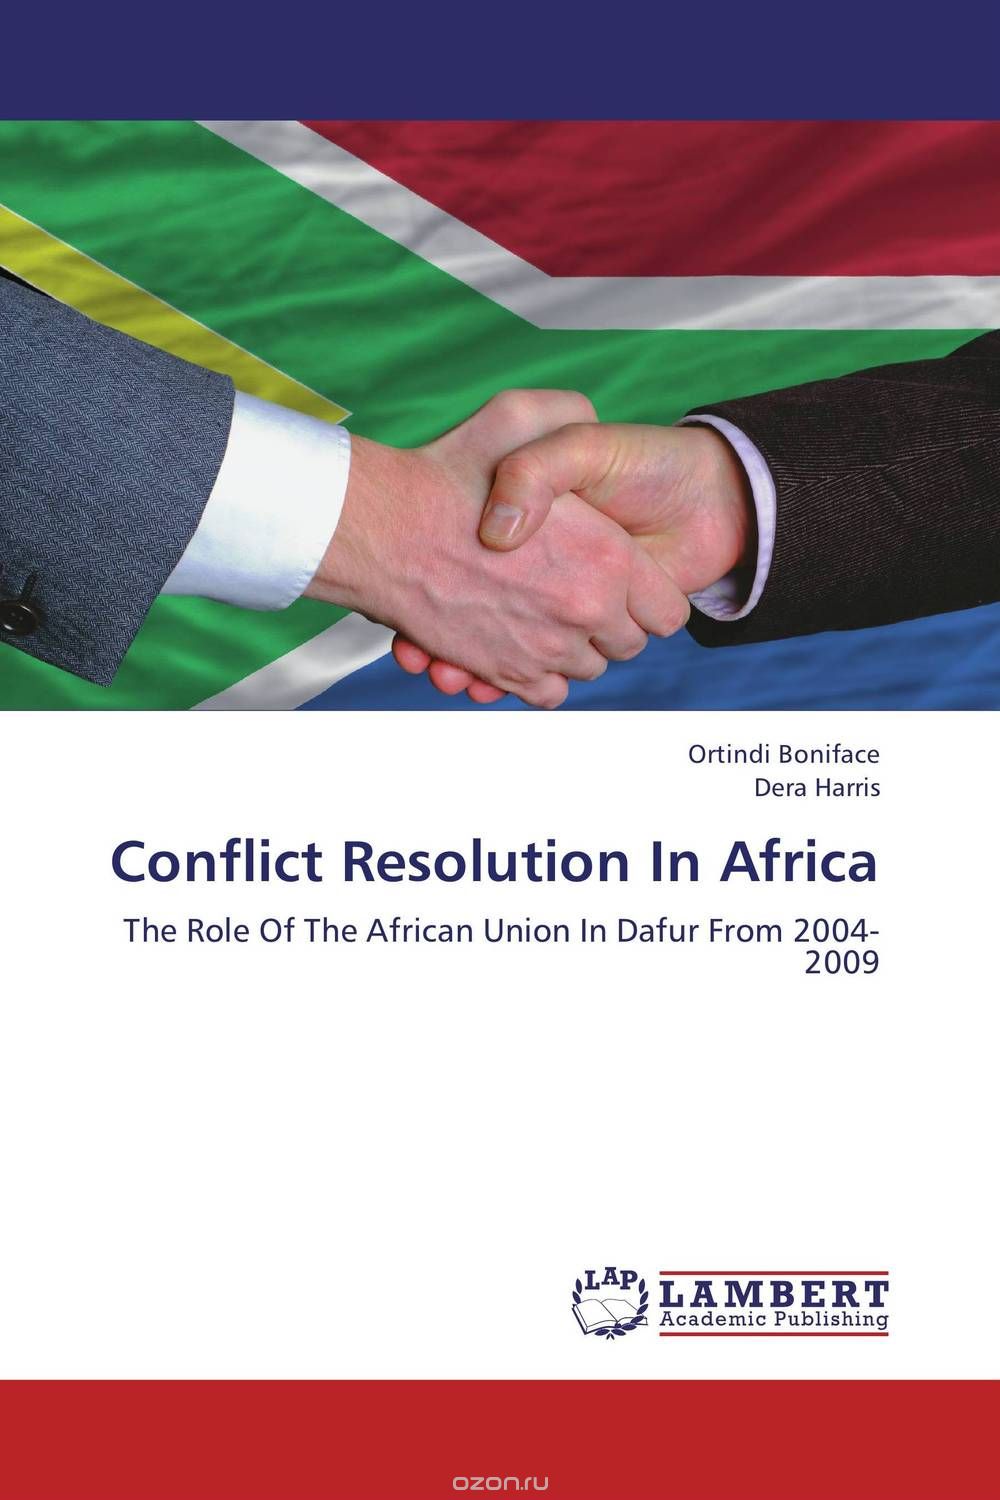 Скачать книгу "Conflict Resolution In Africa"